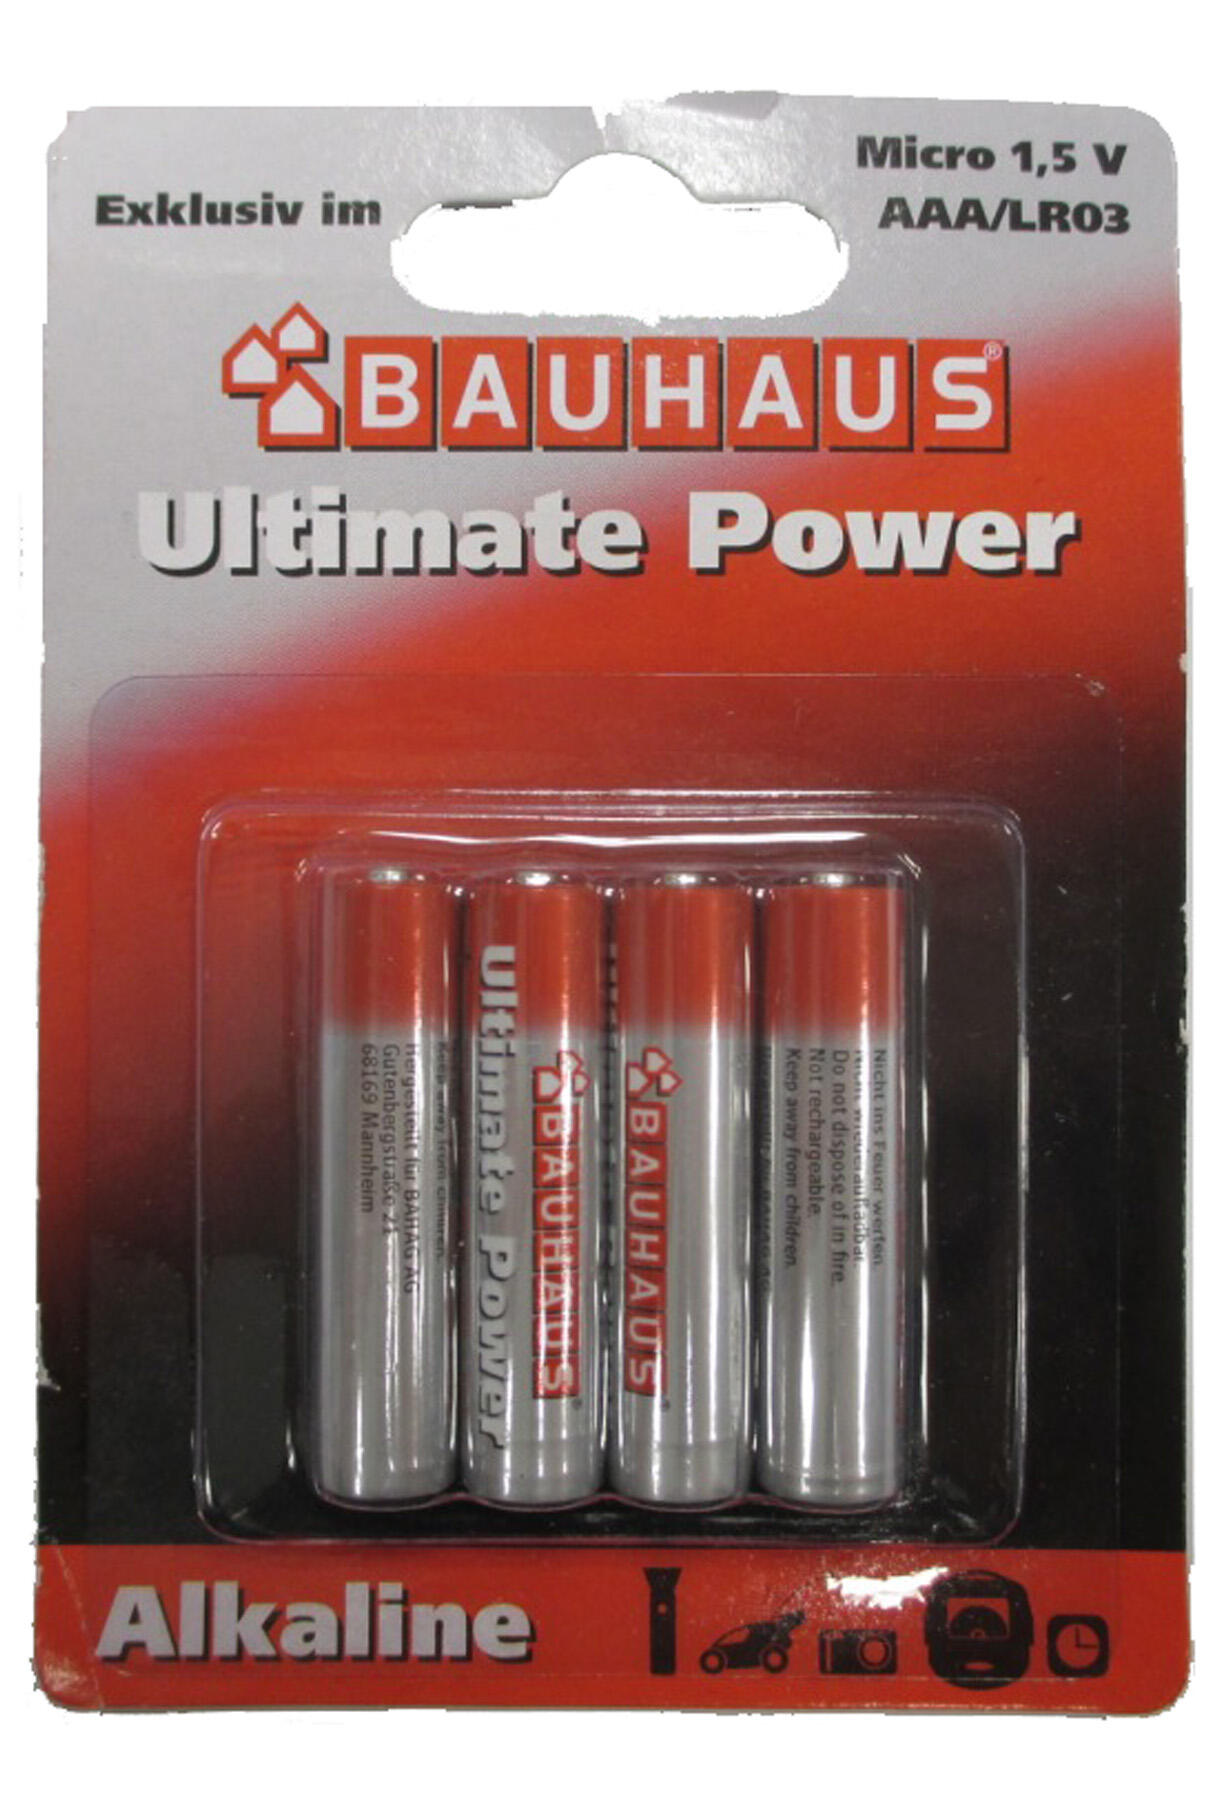 Ultimate Power Bauhaus